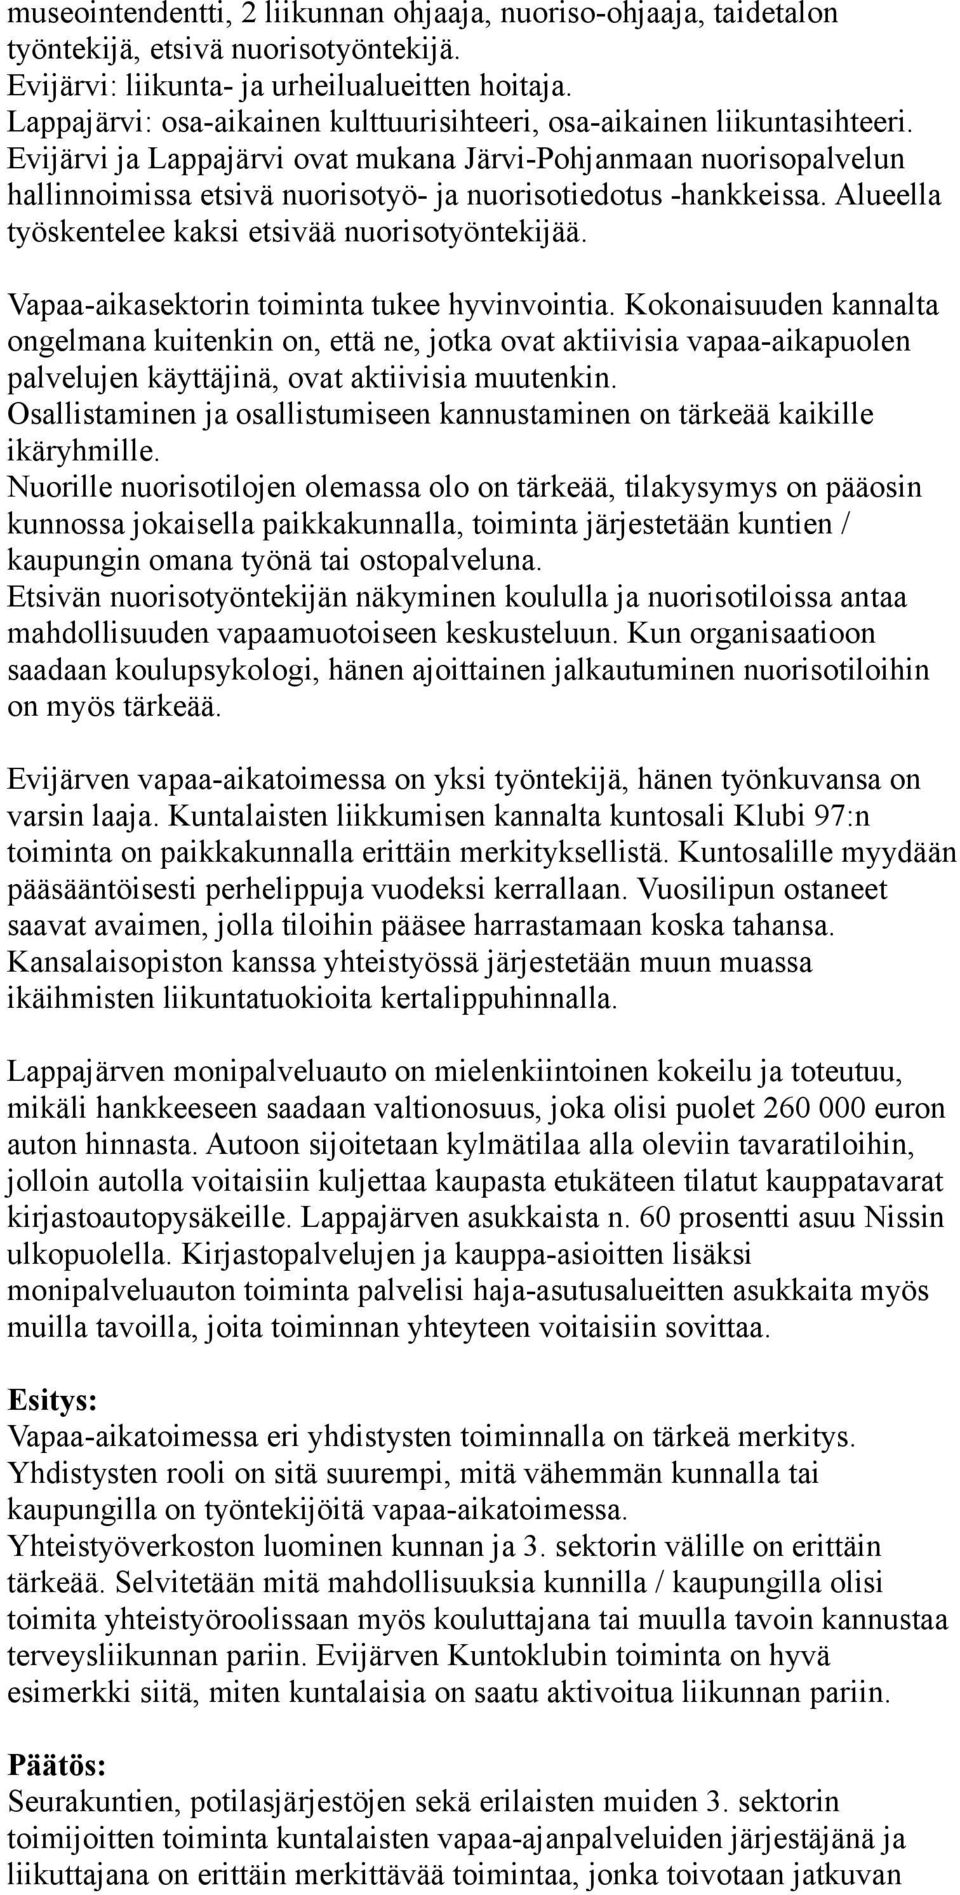 Evijärvi ja Lappajärvi ovat mukana Järvi-Pohjanmaan nuorisopalvelun hallinnoimissa etsivä nuorisotyö- ja nuorisotiedotus -hankkeissa. Alueella työskentelee kaksi etsivää nuorisotyöntekijää.